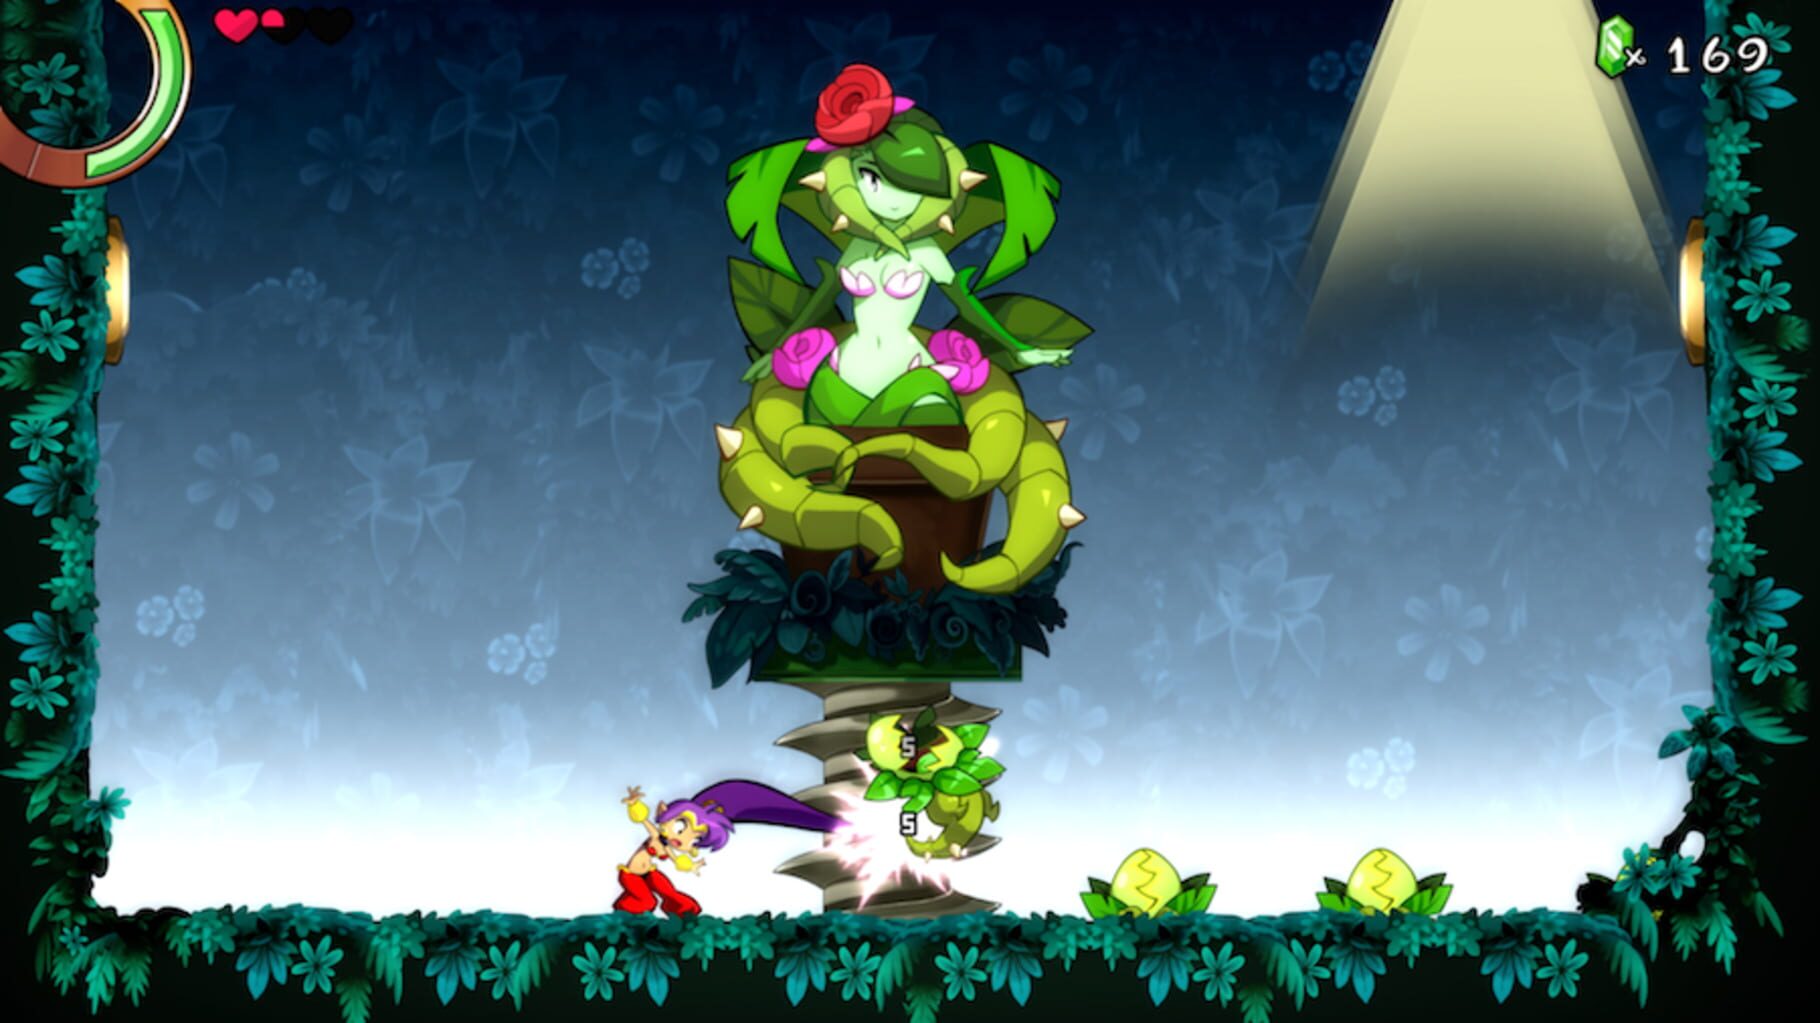 Shantae and the Seven Sirens screenshots